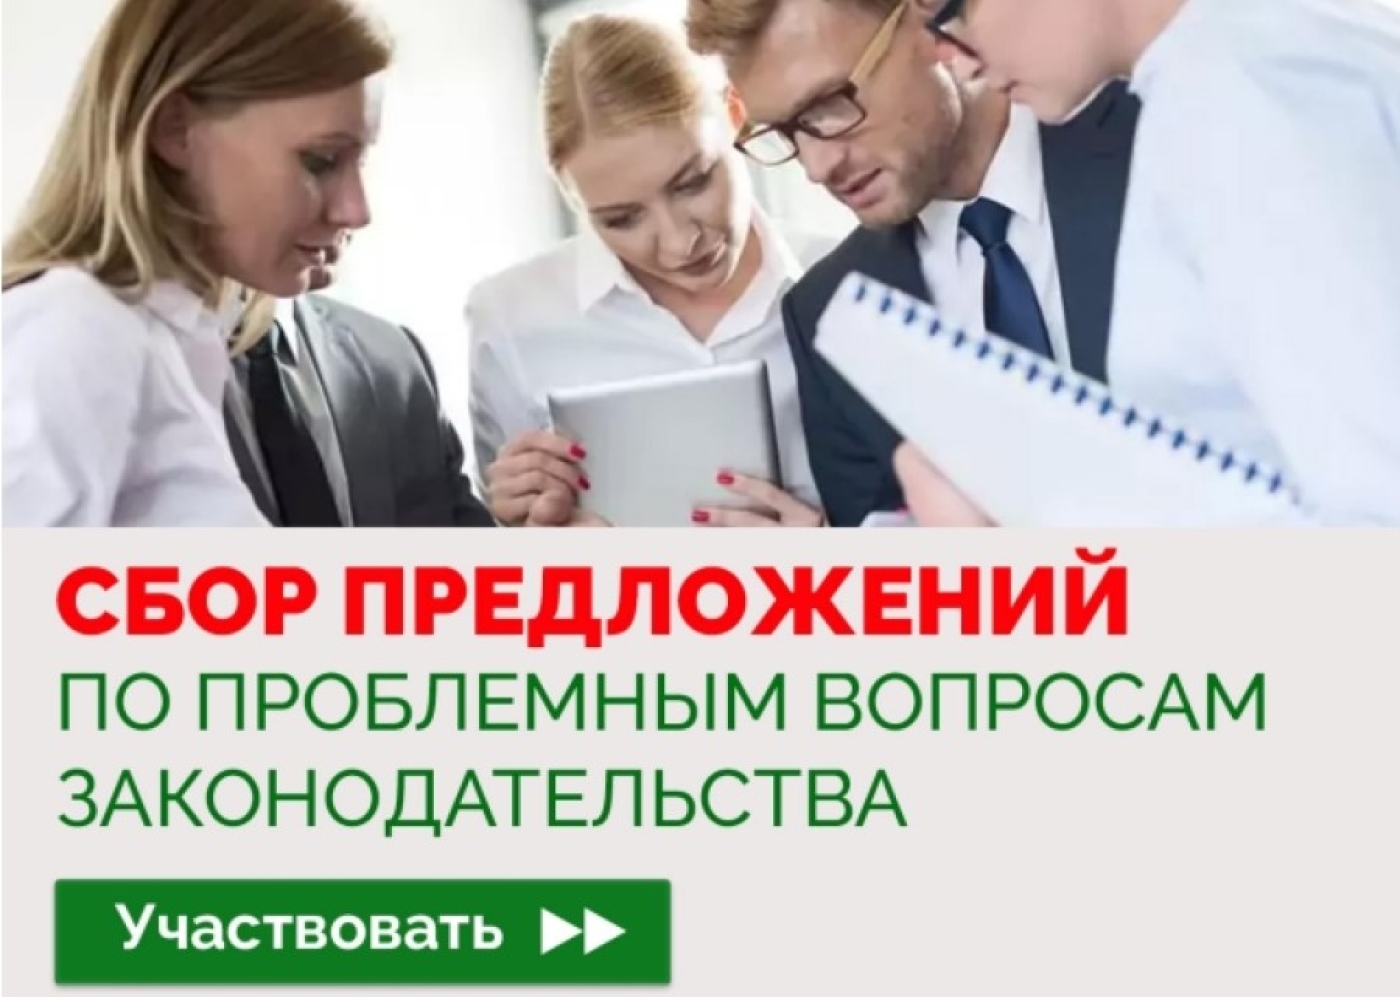 ru/sotsialnaya-reklama/itemlist/tag/Сбор%20предложений%20по%20вопросам%20законодательства